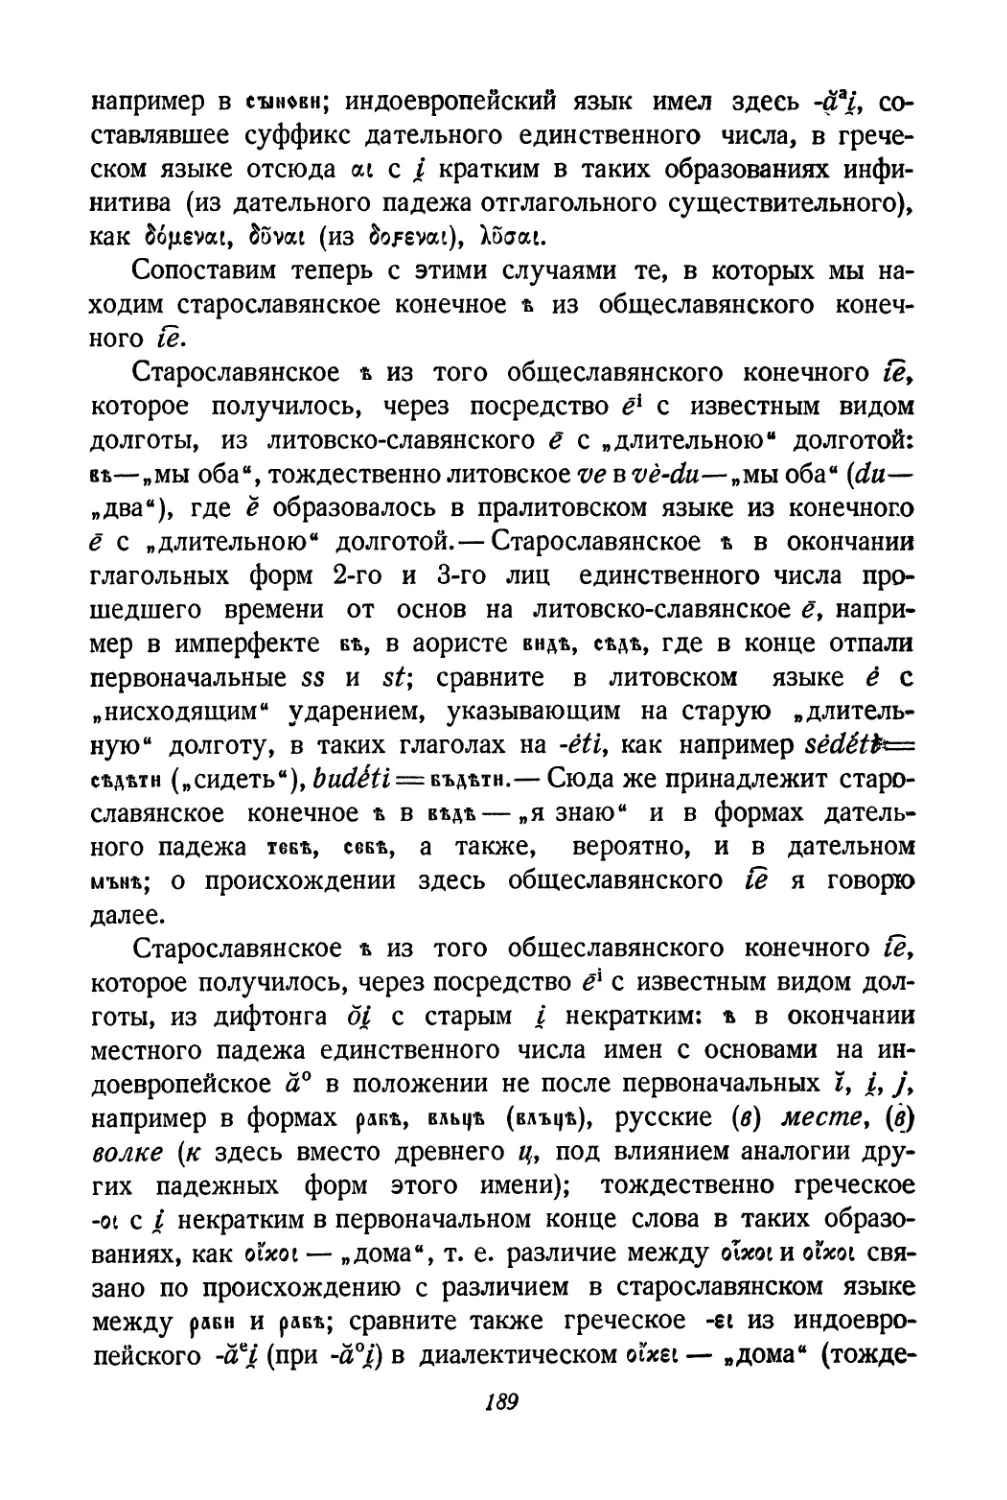 Случаи, в которых мы находим старославянское конечное ъ из общеславянского конечного іе